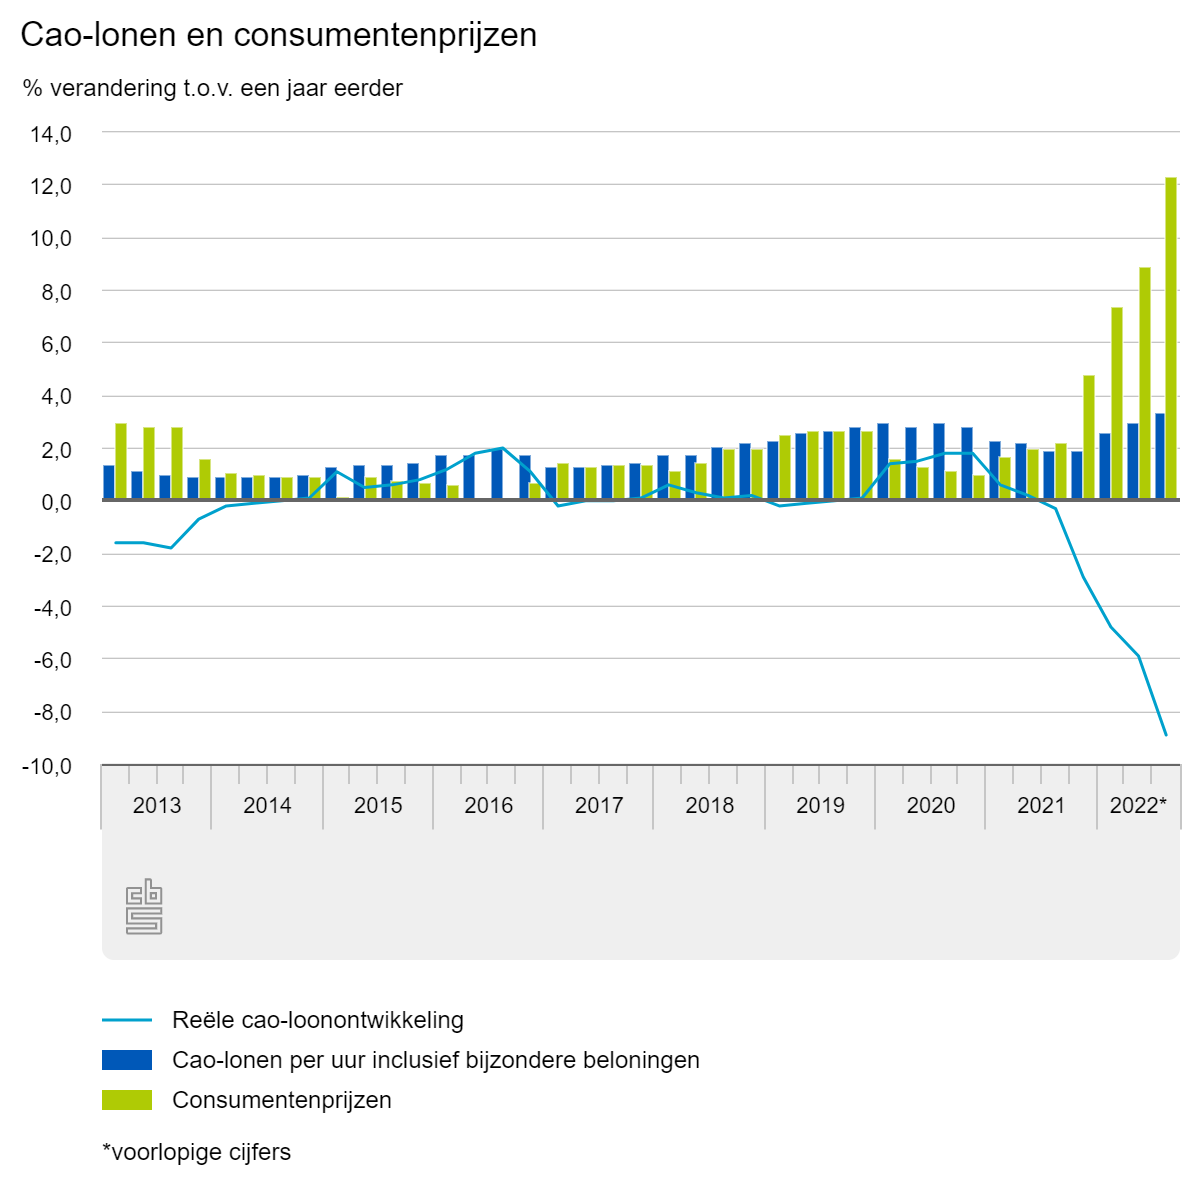 Cao-lonen en consumentenprijzen, bron CBS